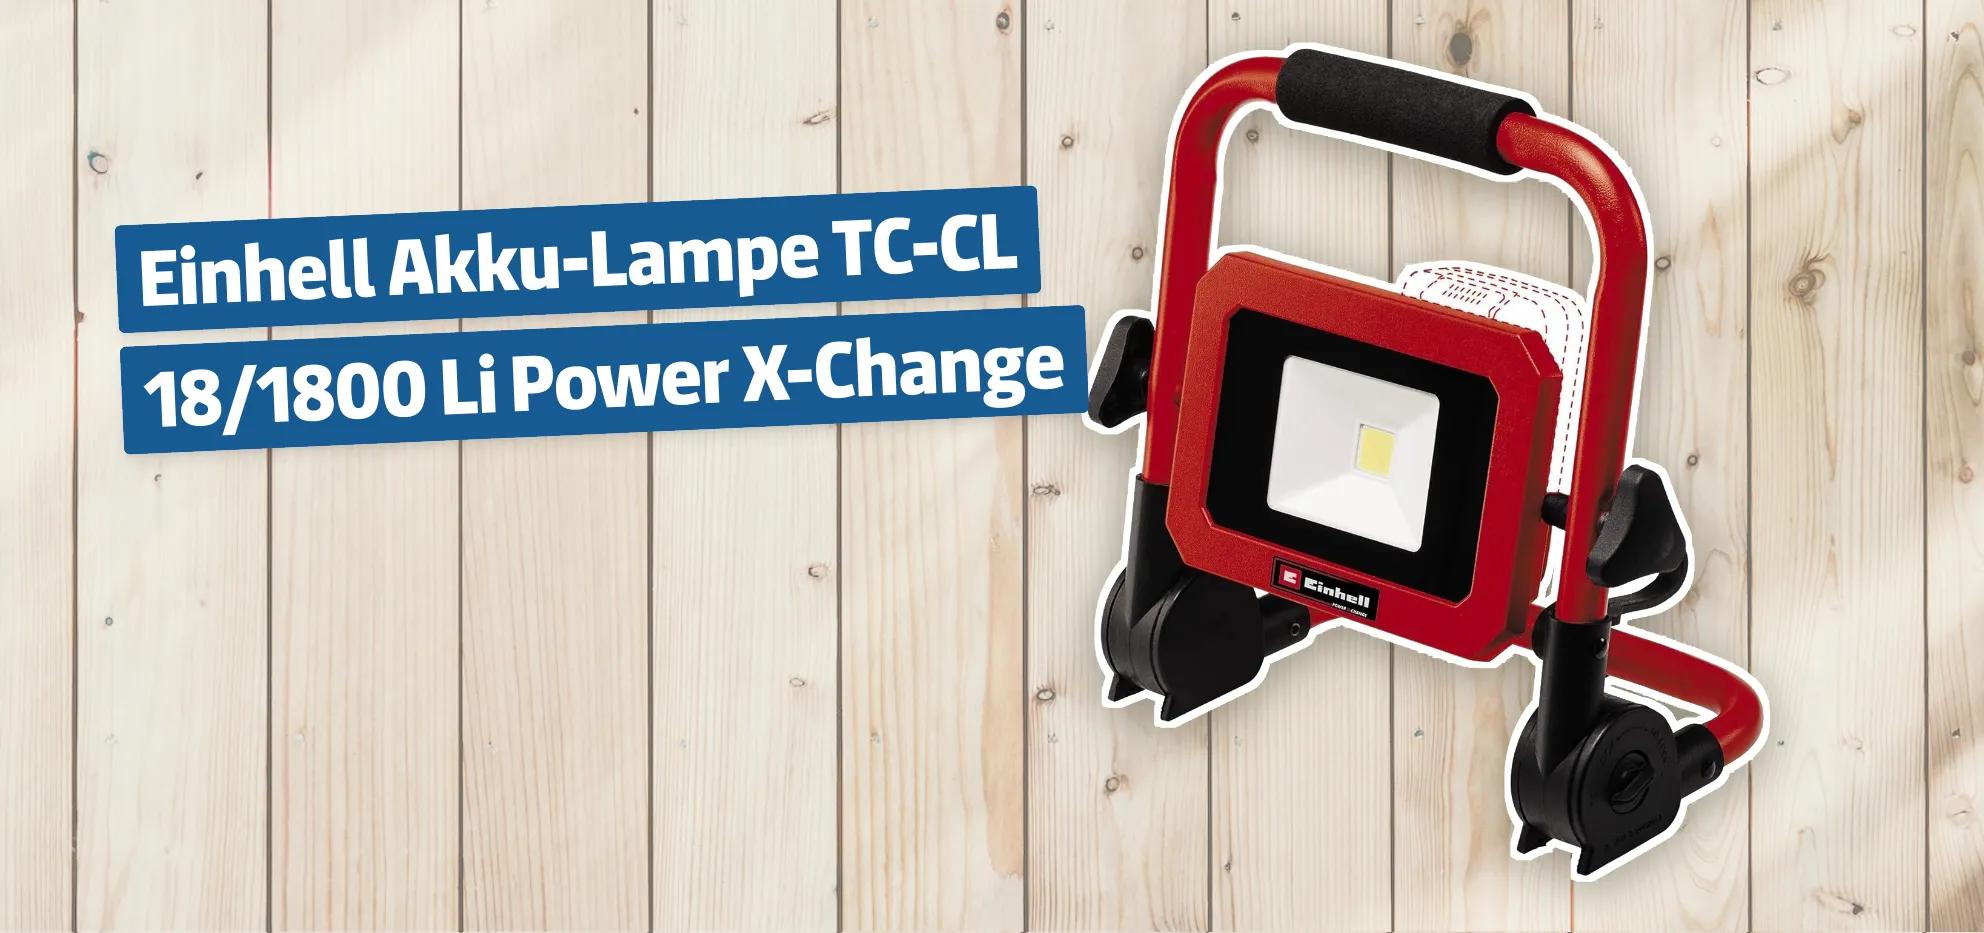 Einhell Akku-Lampe TC-CL 18/1800 Li Power X-Change